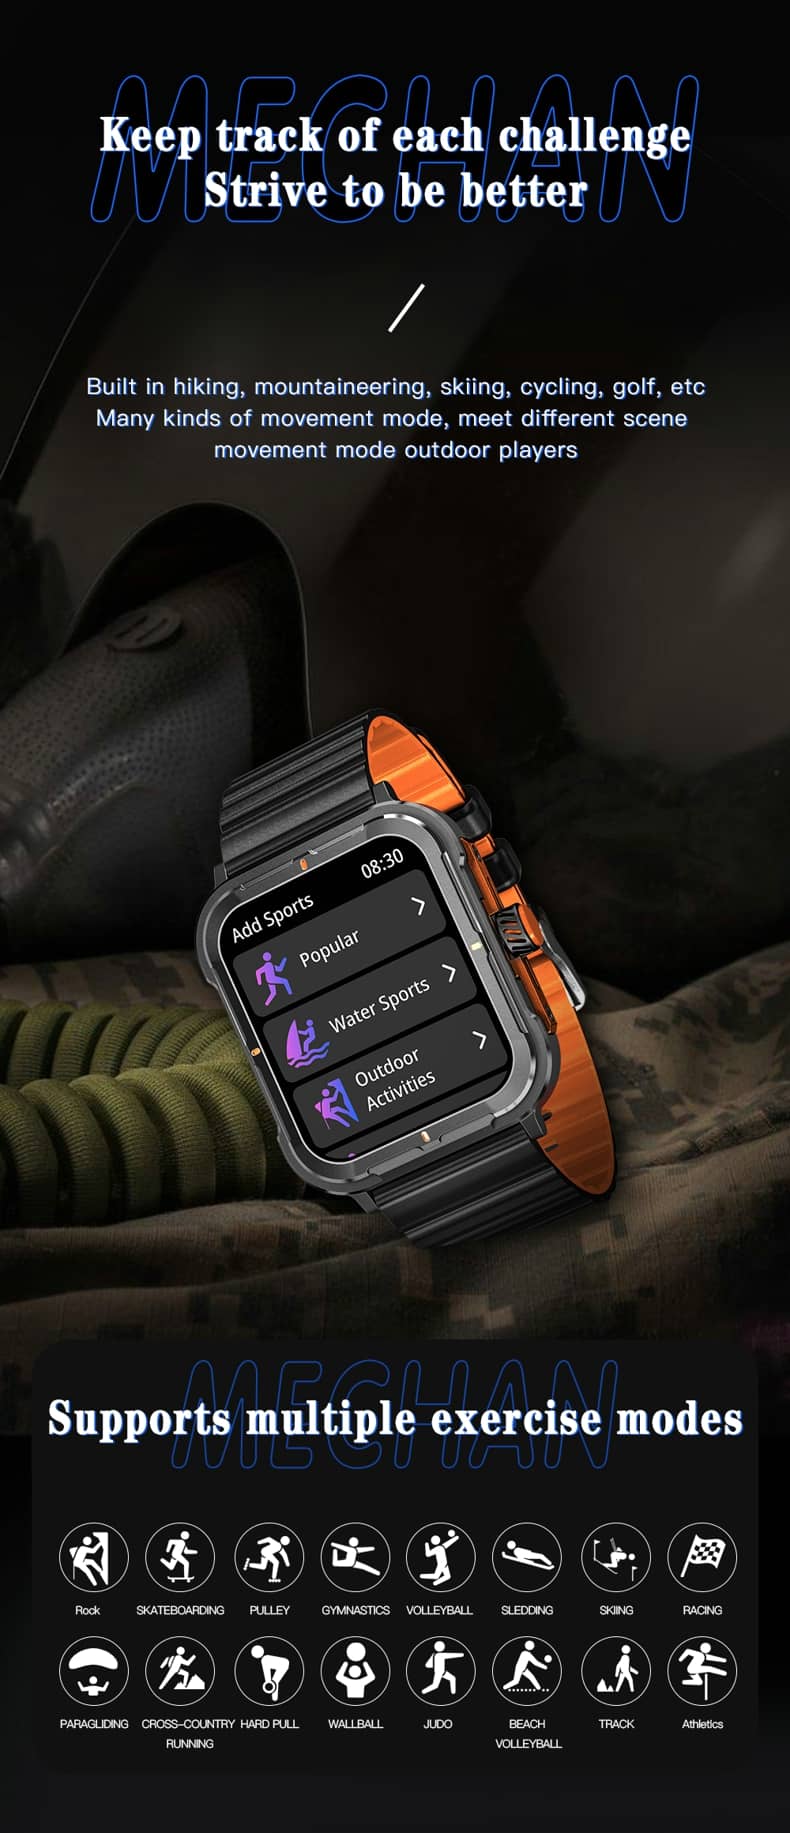 Findtime Smartwatch EX23